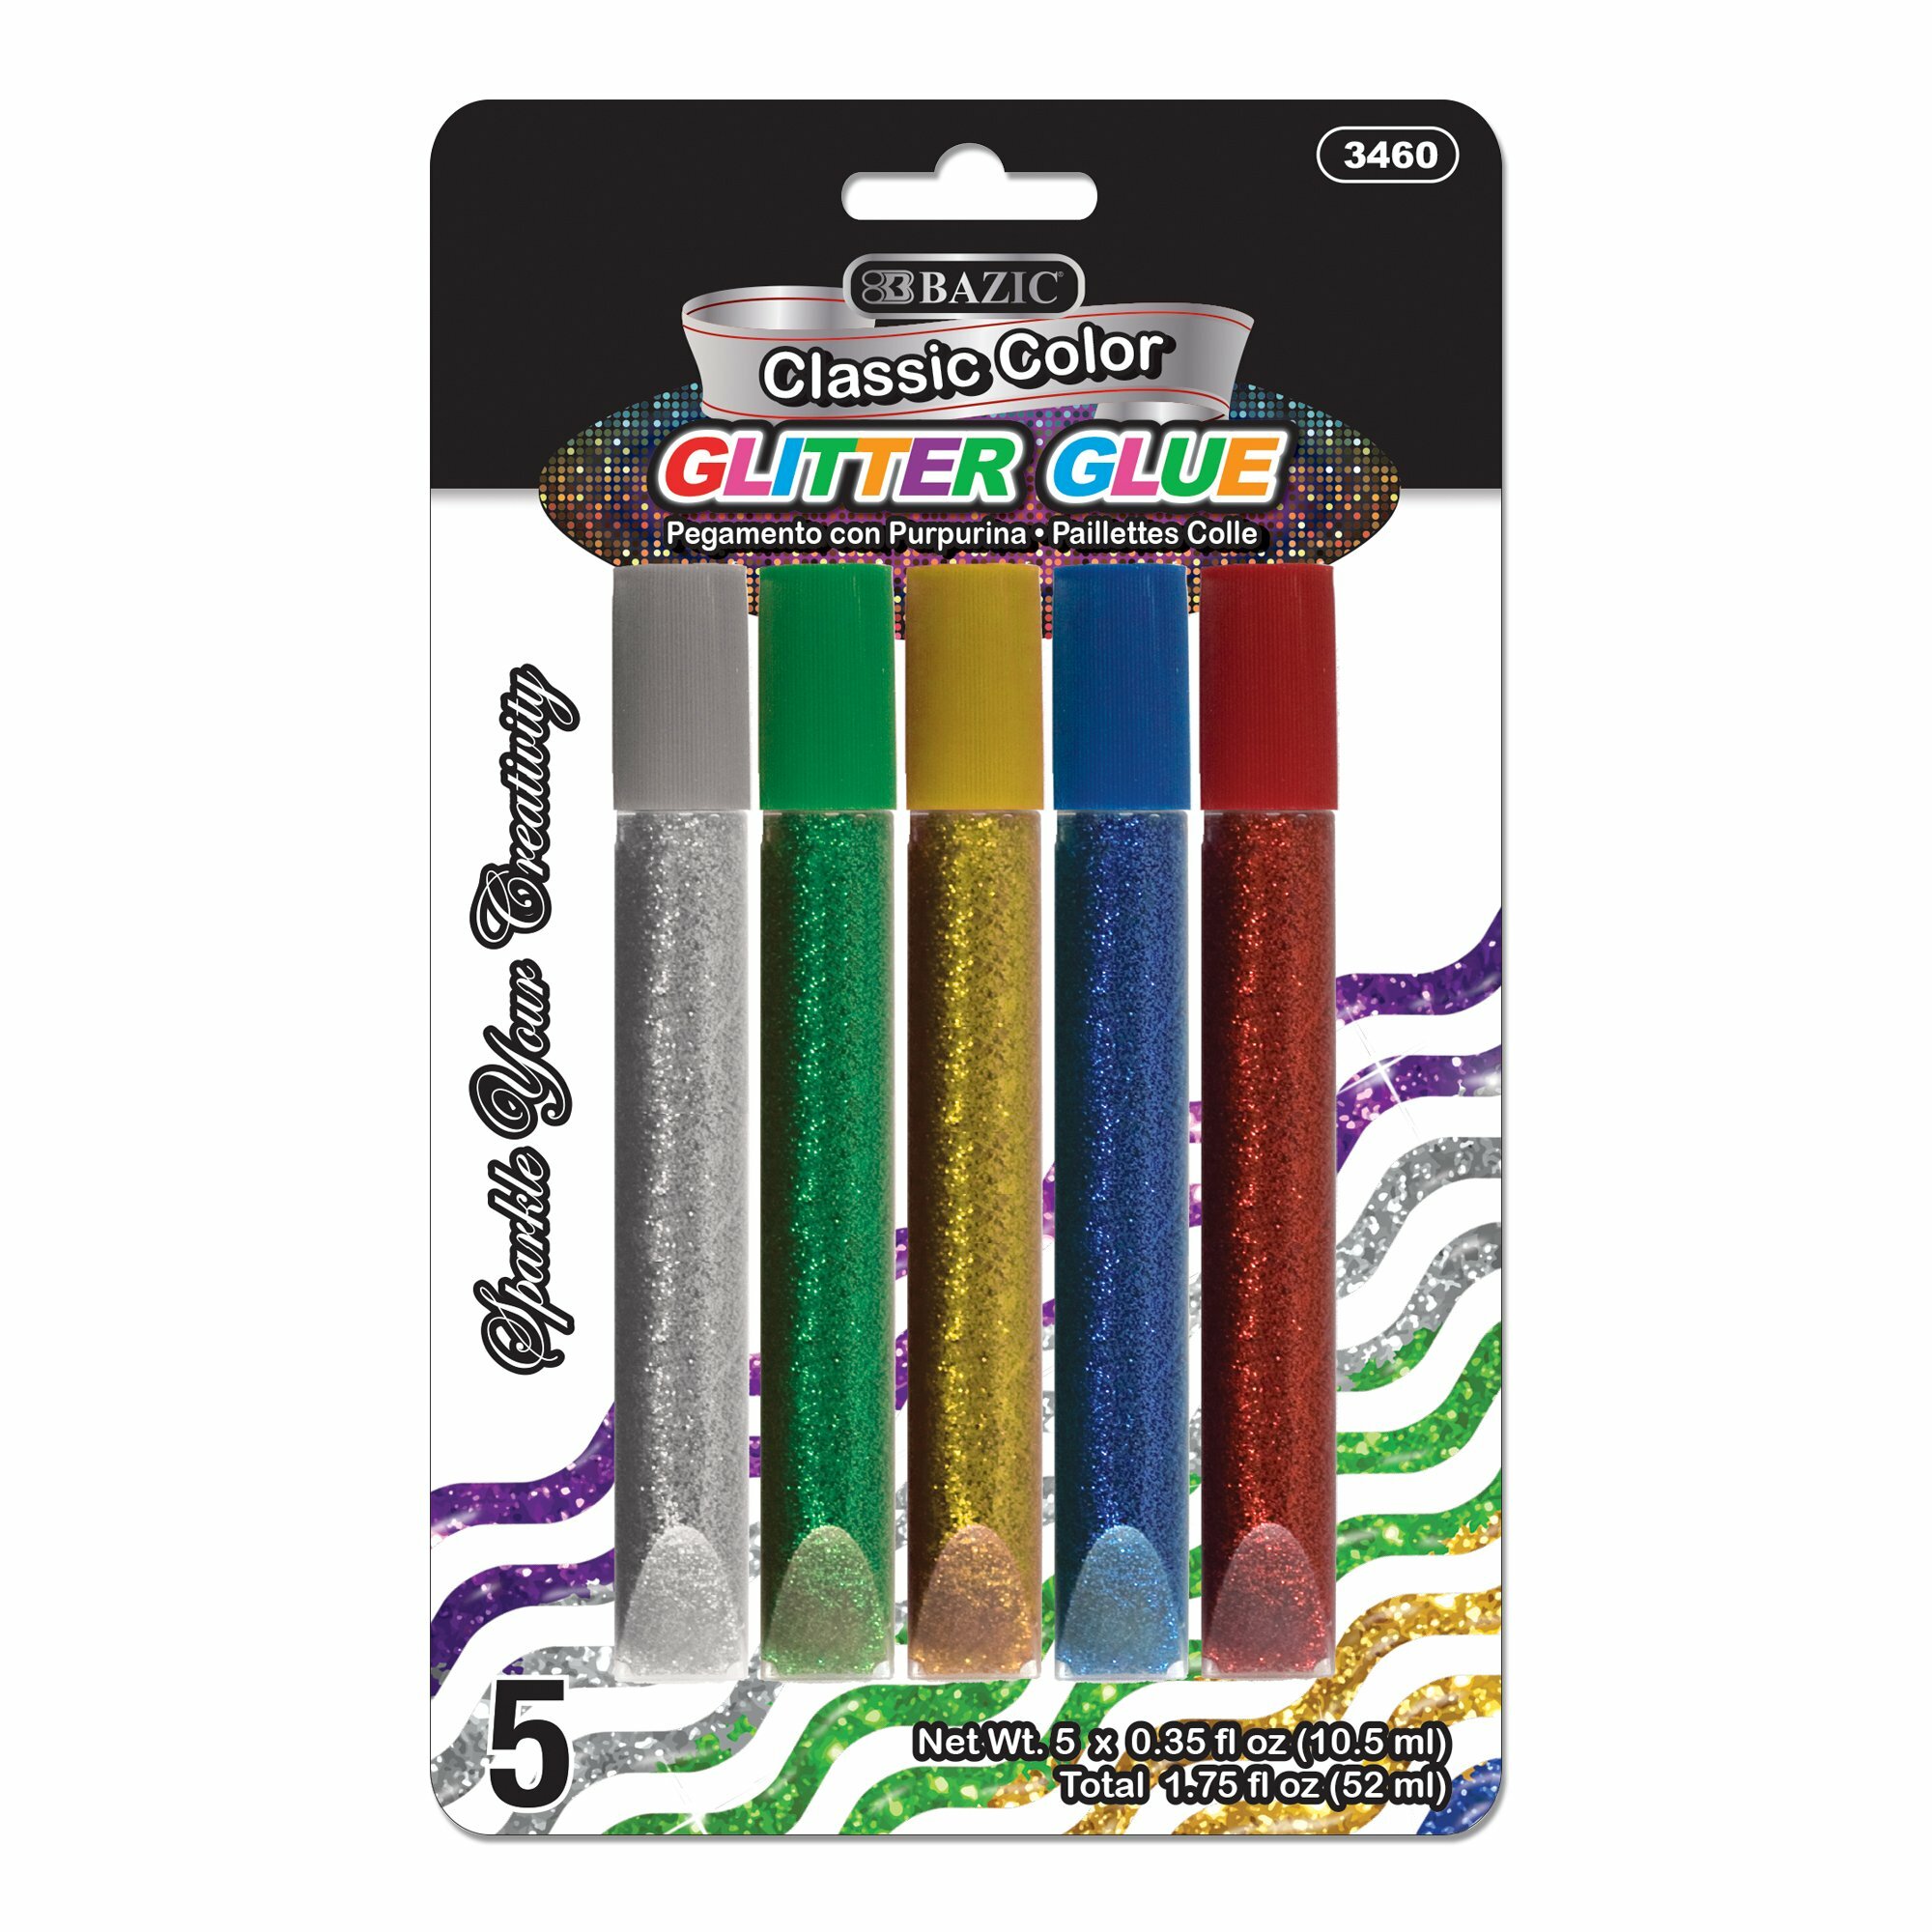 Glitter Glue Pen 5Pk (IN-6) (3460)